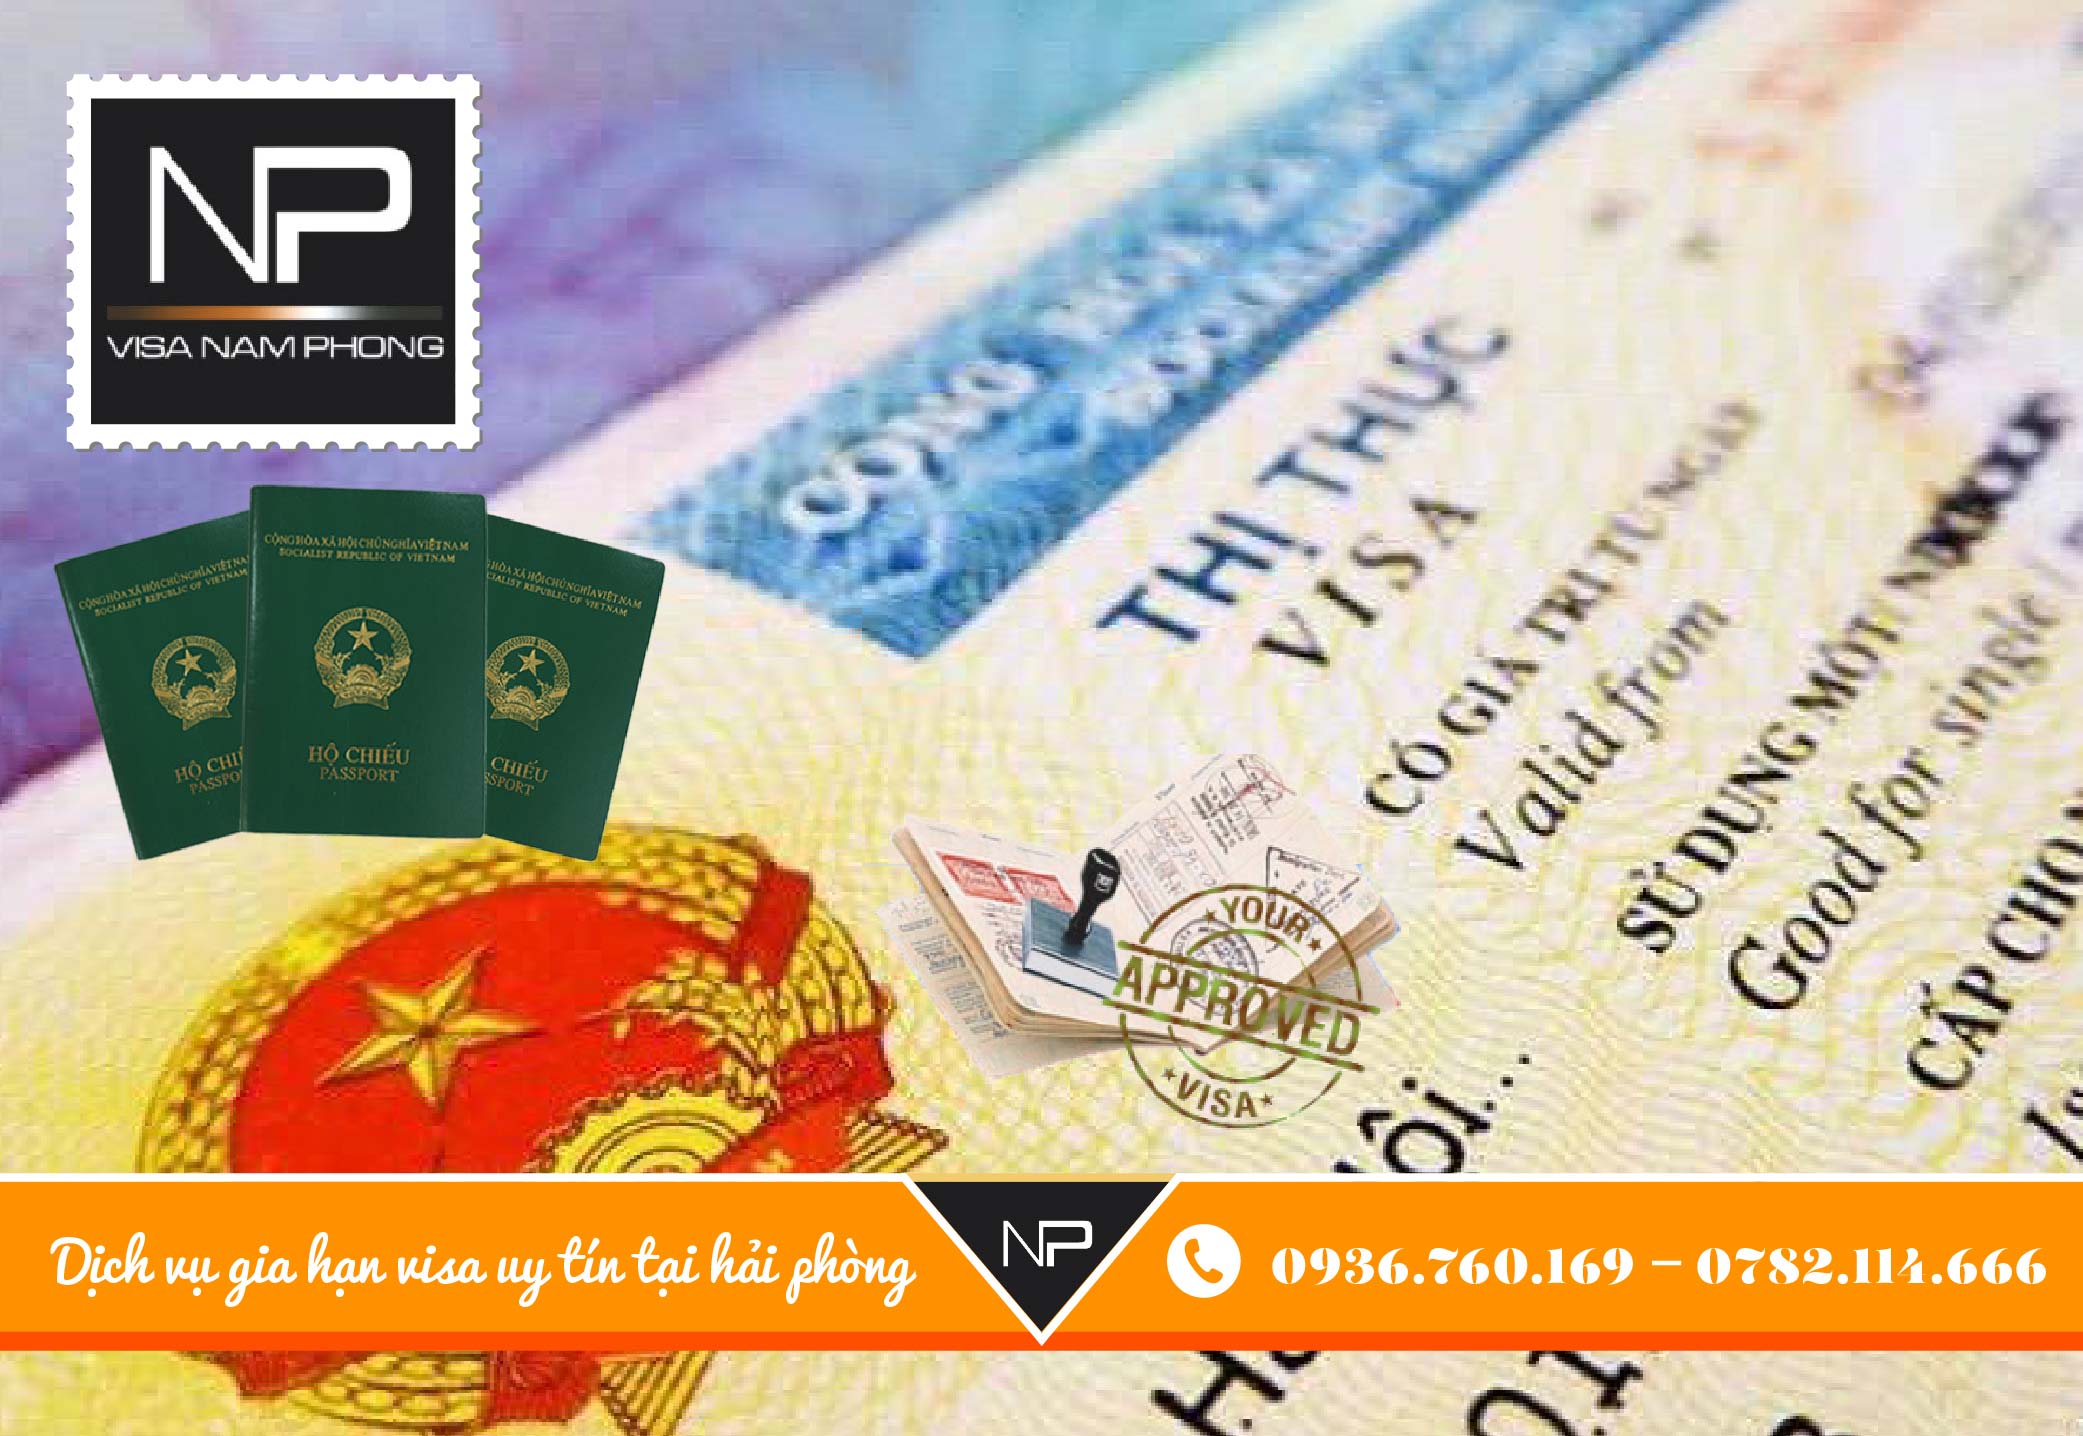 Dịch vụ gia hạn visa uy tín tại hải phòng